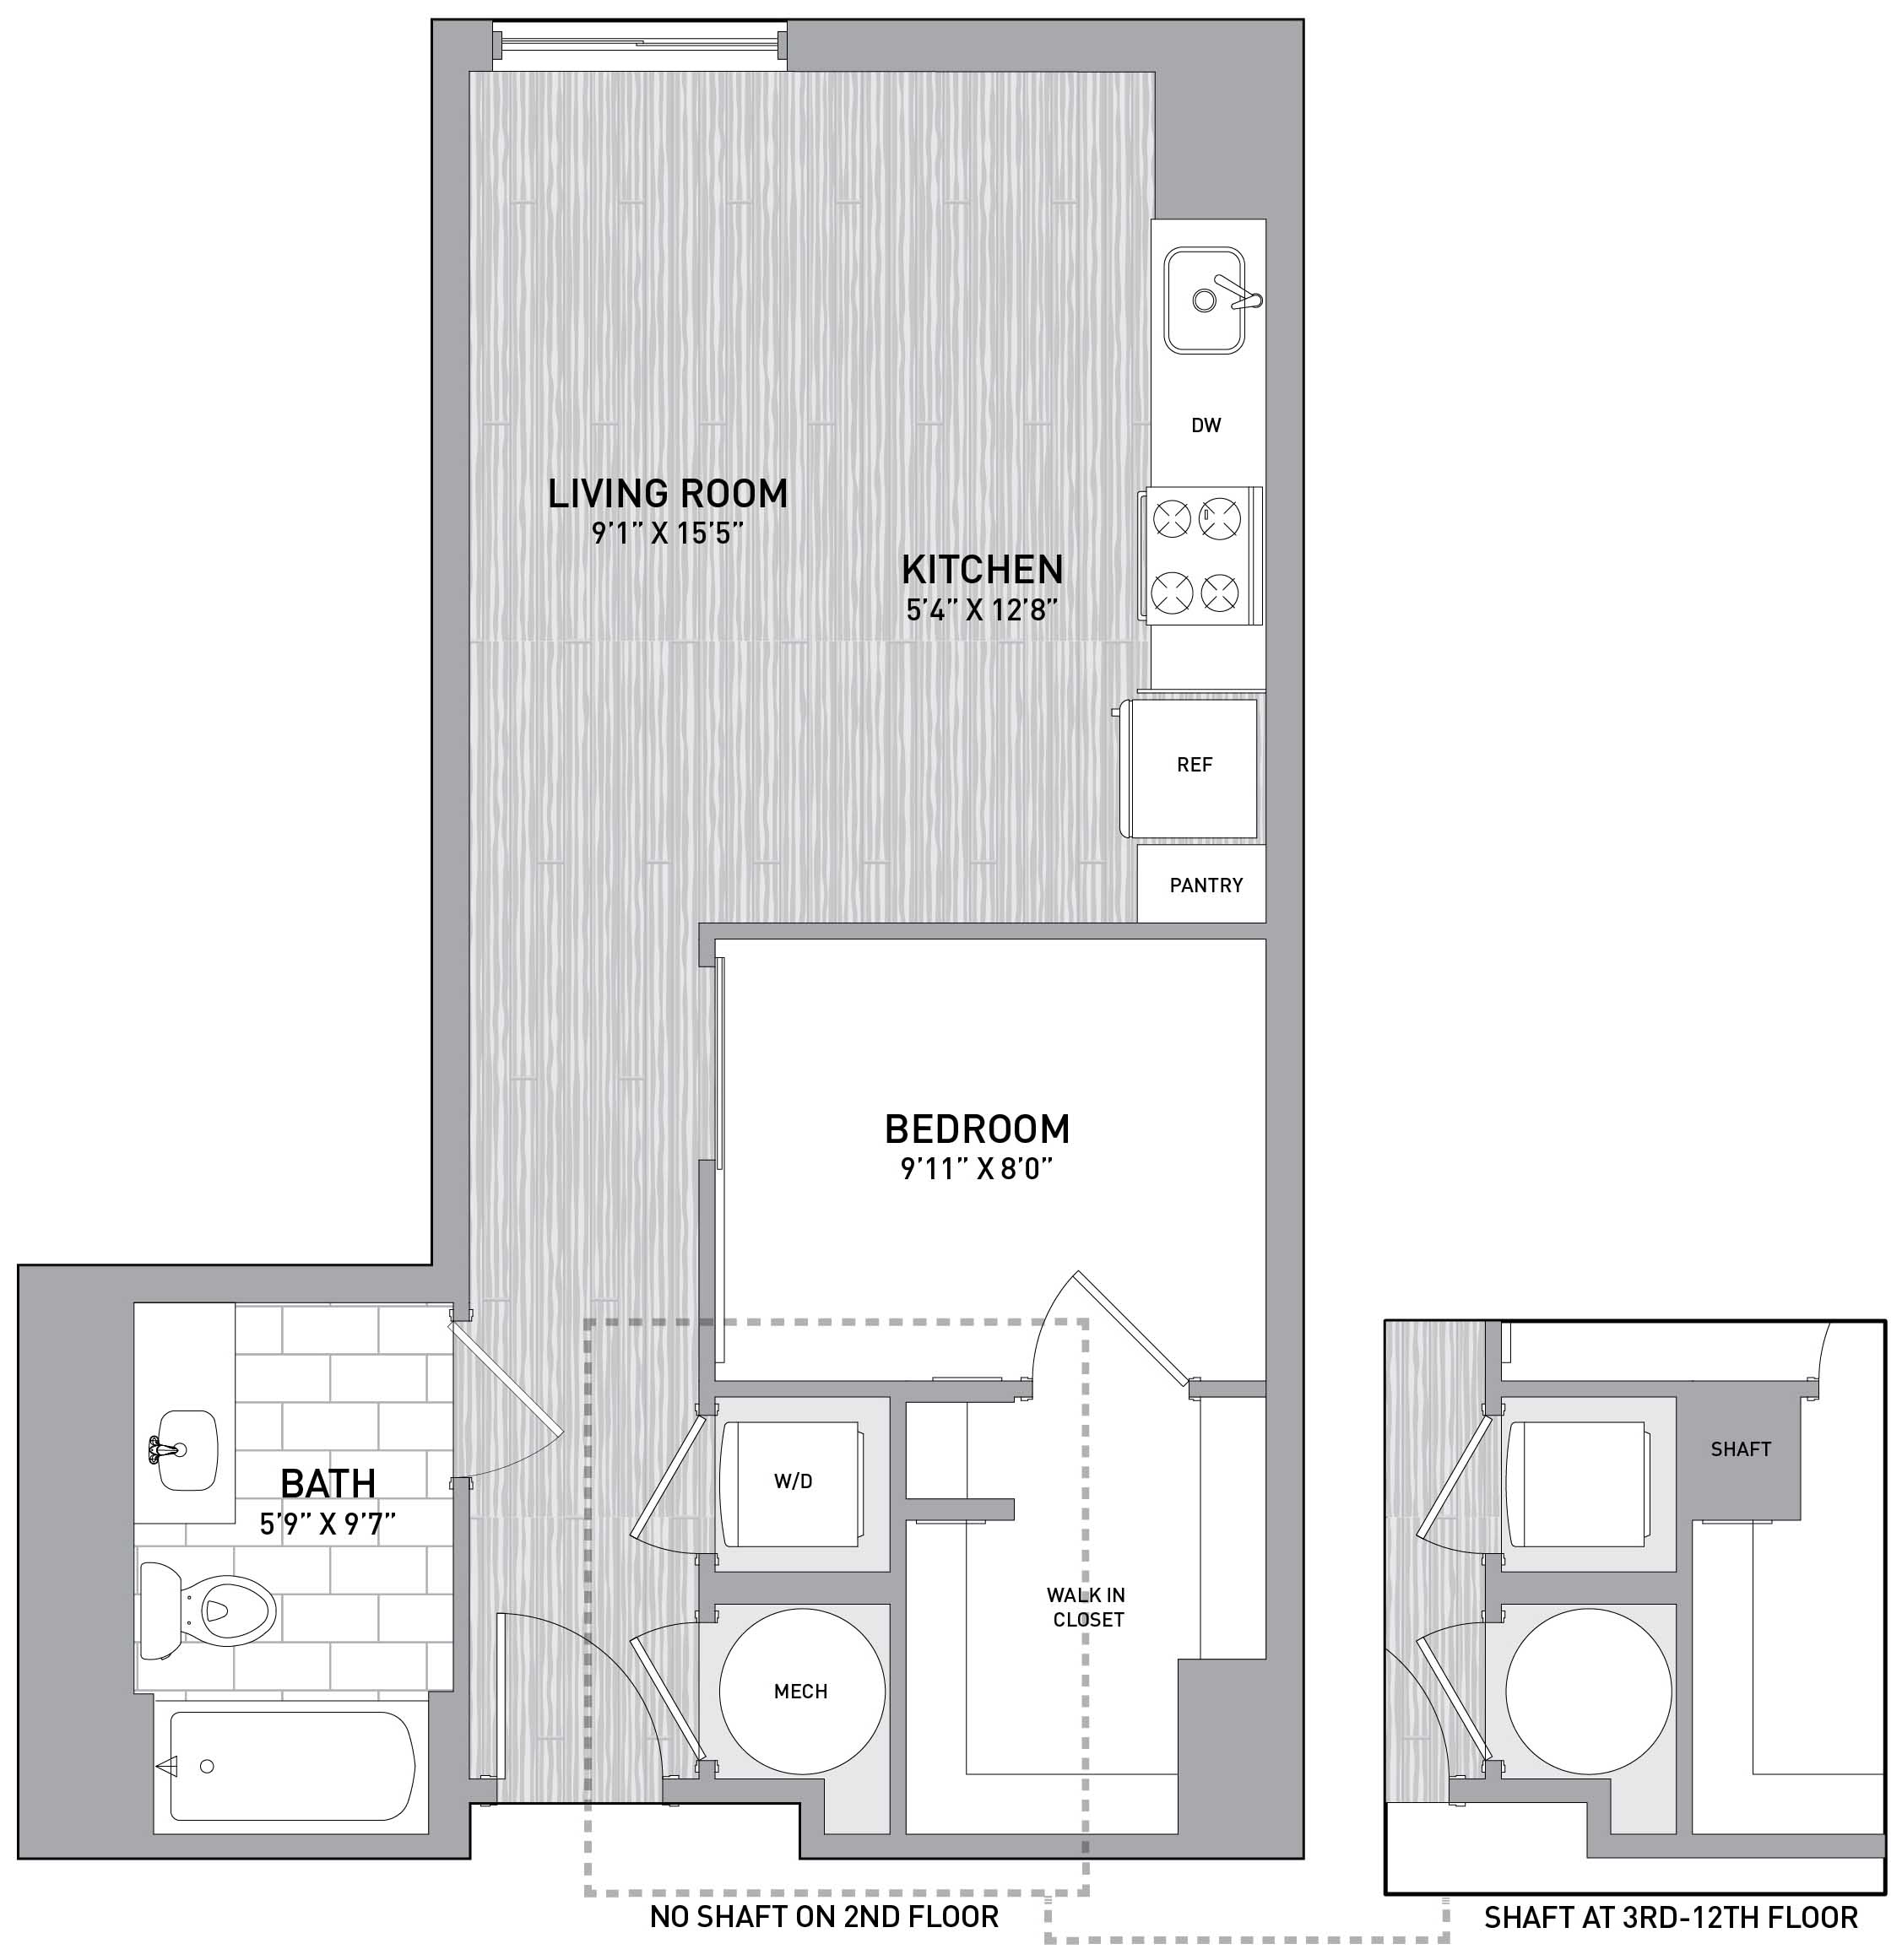 Floorplan Image of unit 151-0816